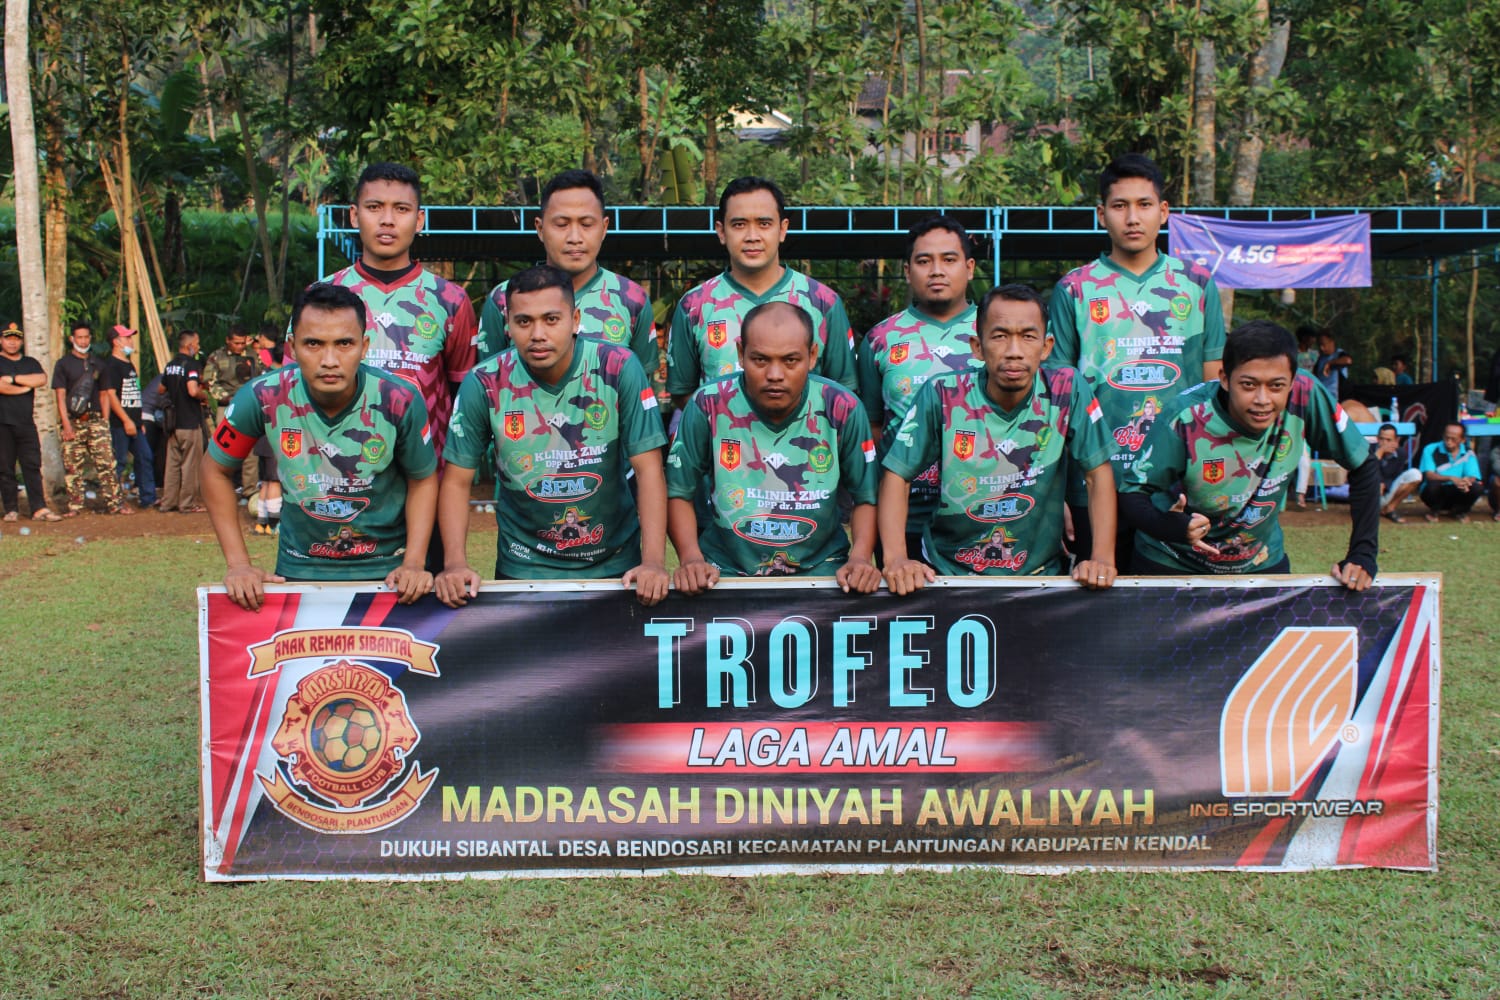 “PERKASA FC” KOKAM Pemuda Muhammadiyah VS Banser FC Ramaikan Laga Amal Pembangunan Madrasah